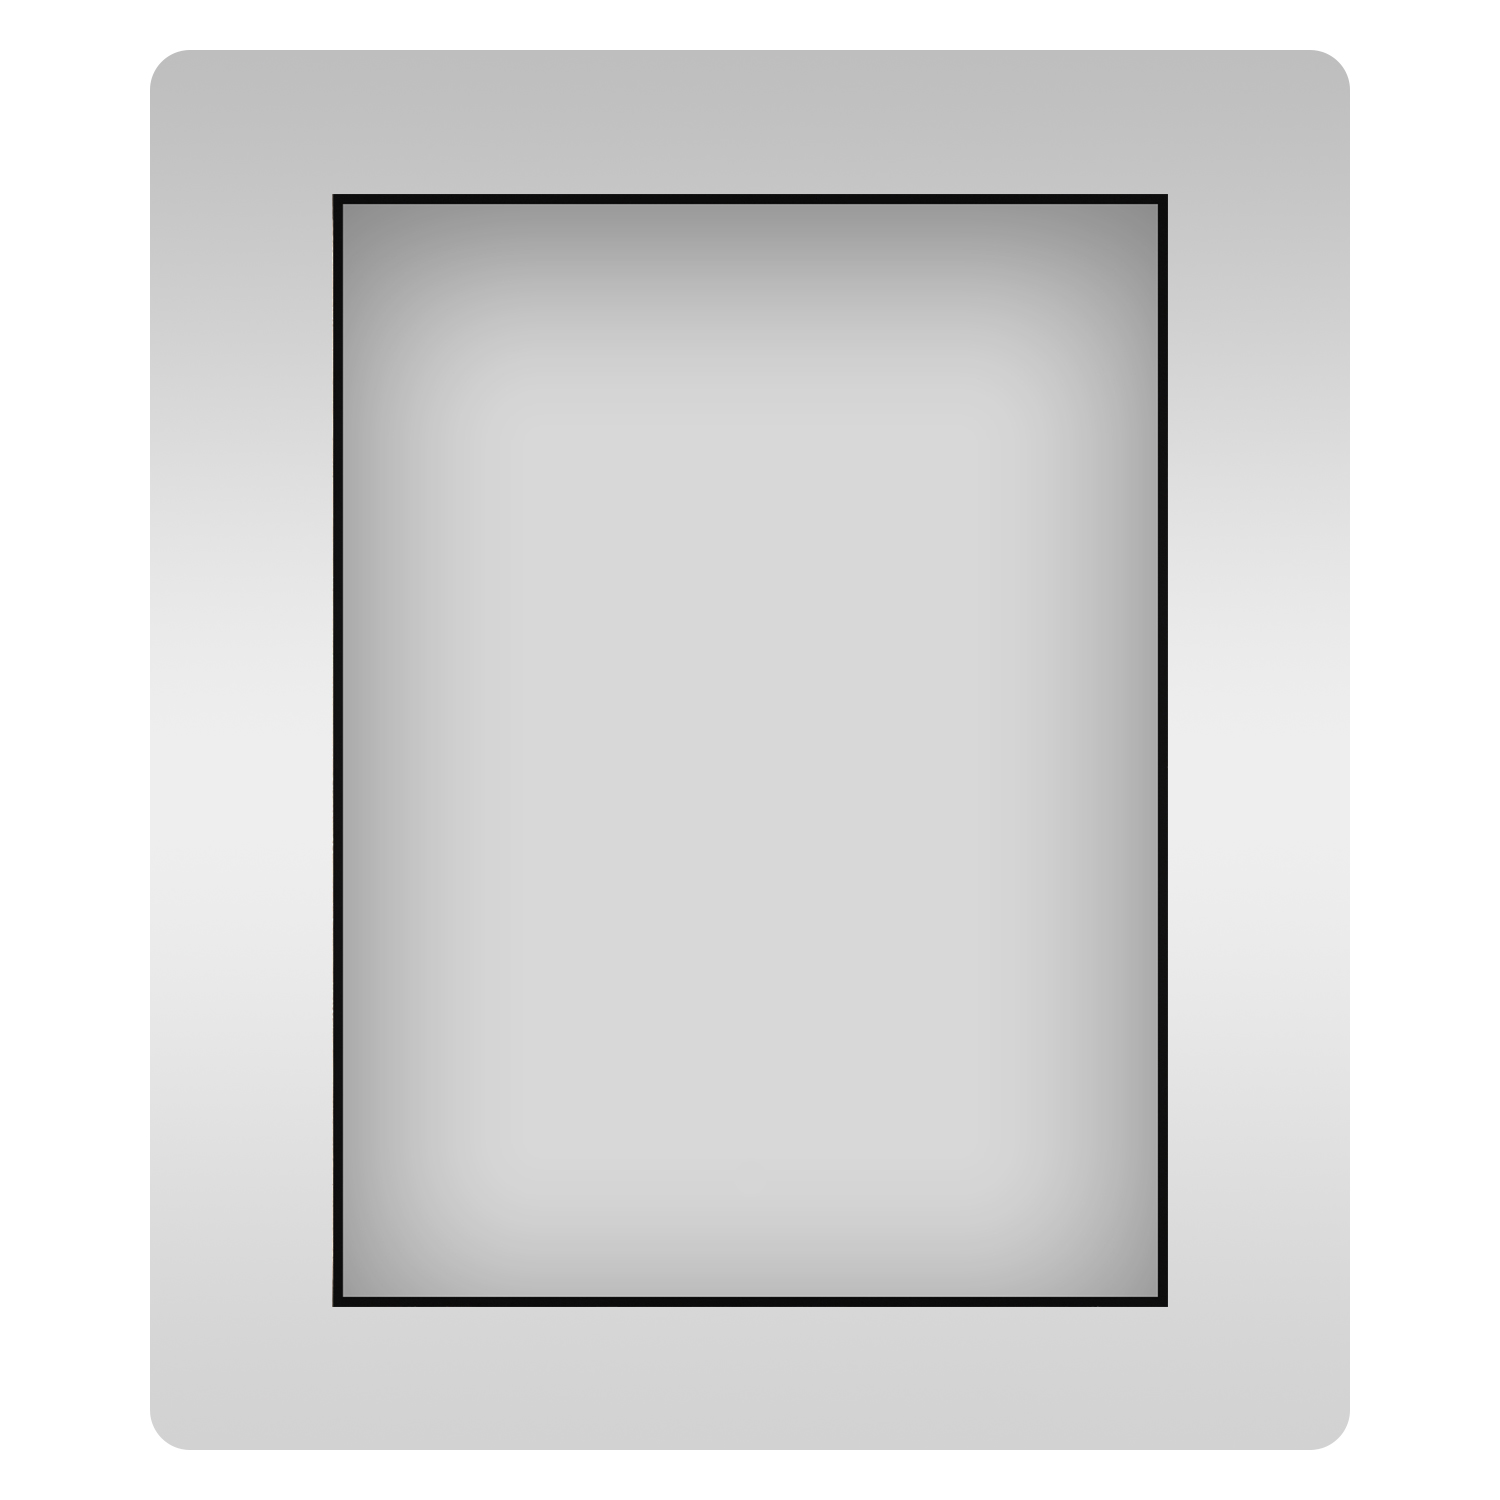 Влагостойкое прямоугольное зеркало Wellsee 7 Rays' Spectrum 172200500, 50х60 см